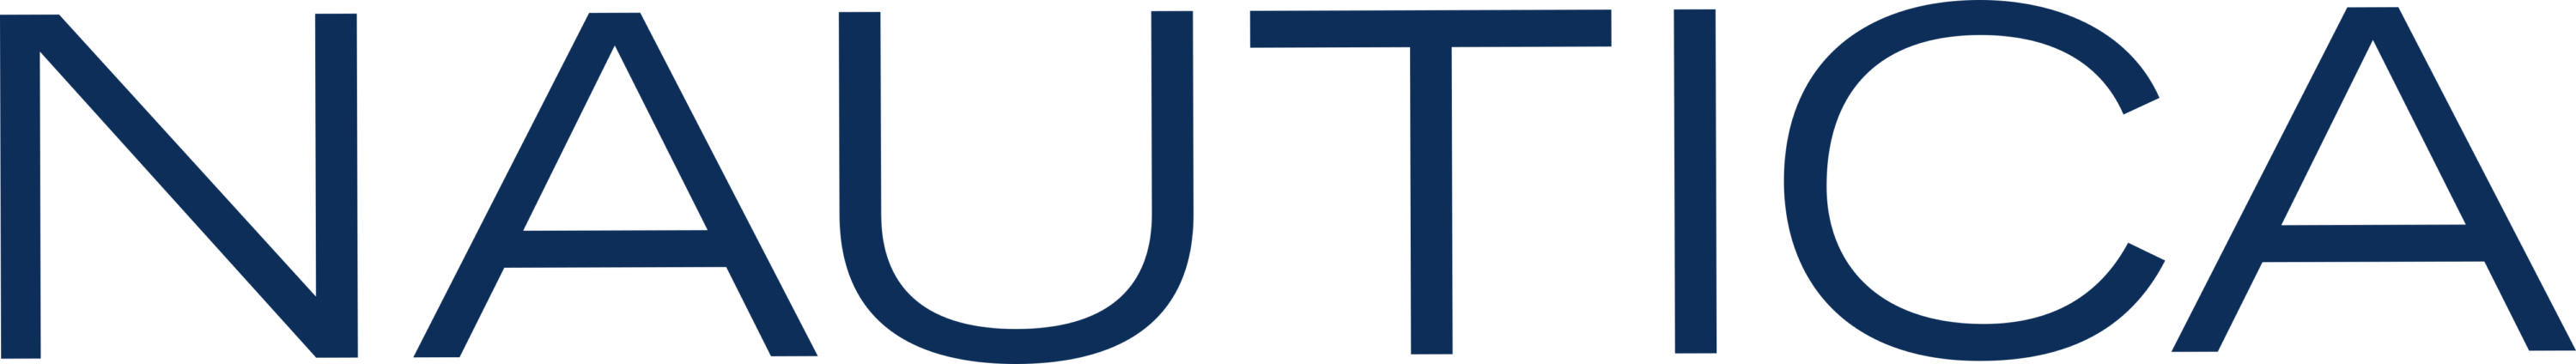 Nautica text Logo 2000